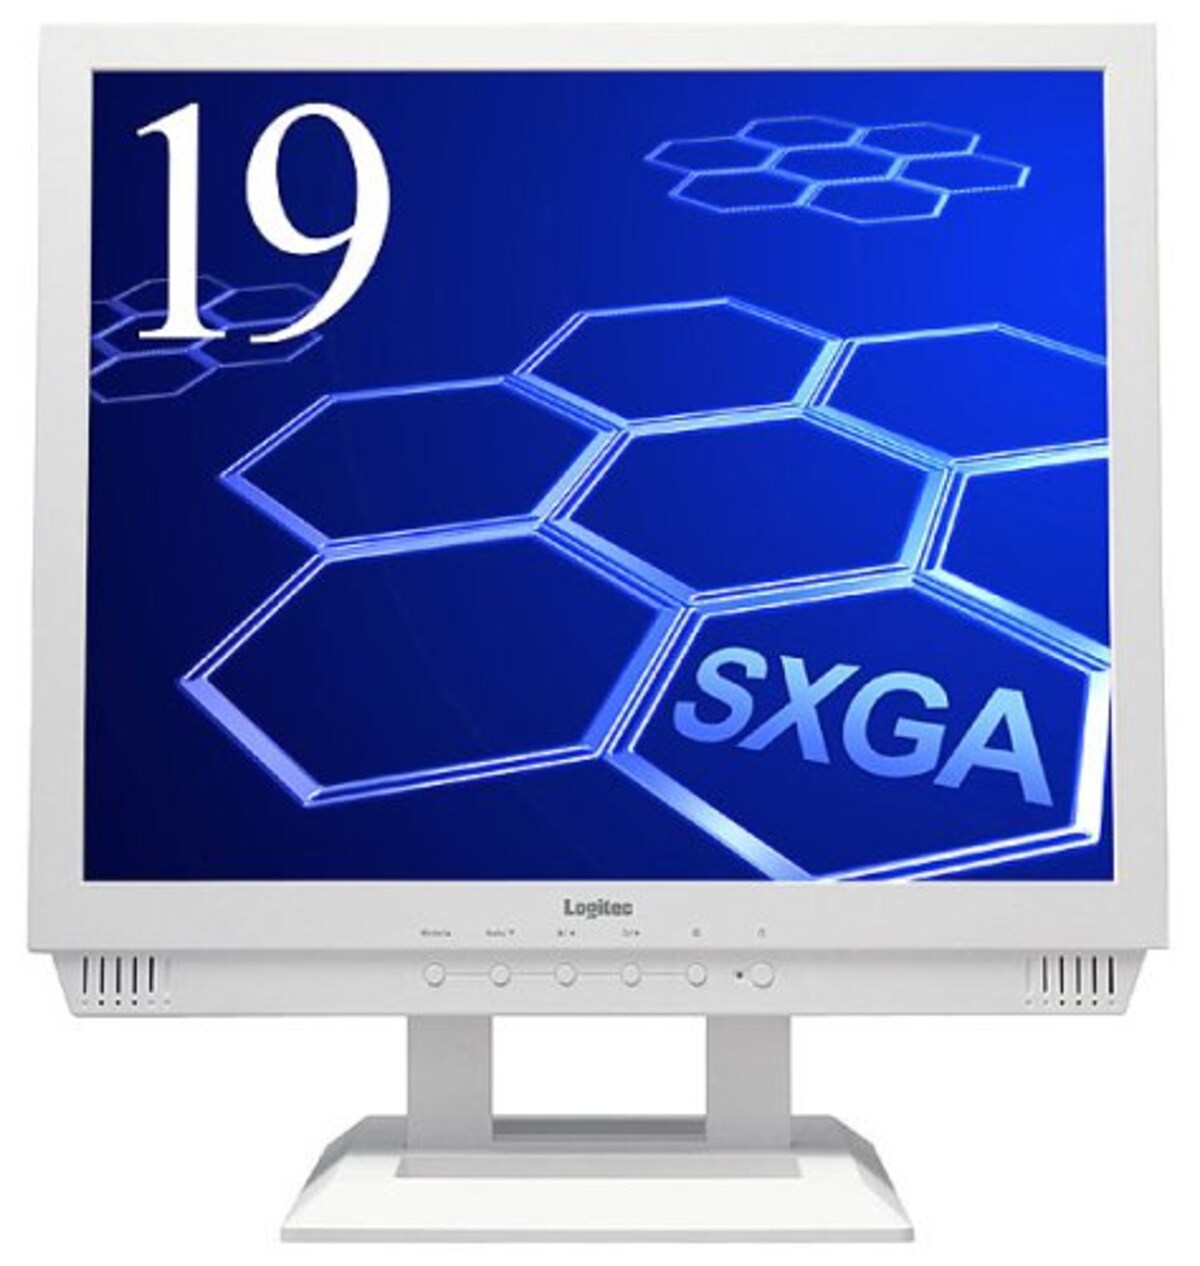 Logitec SXGA対応19型アナログ液晶モニタ LCM-T192A/S